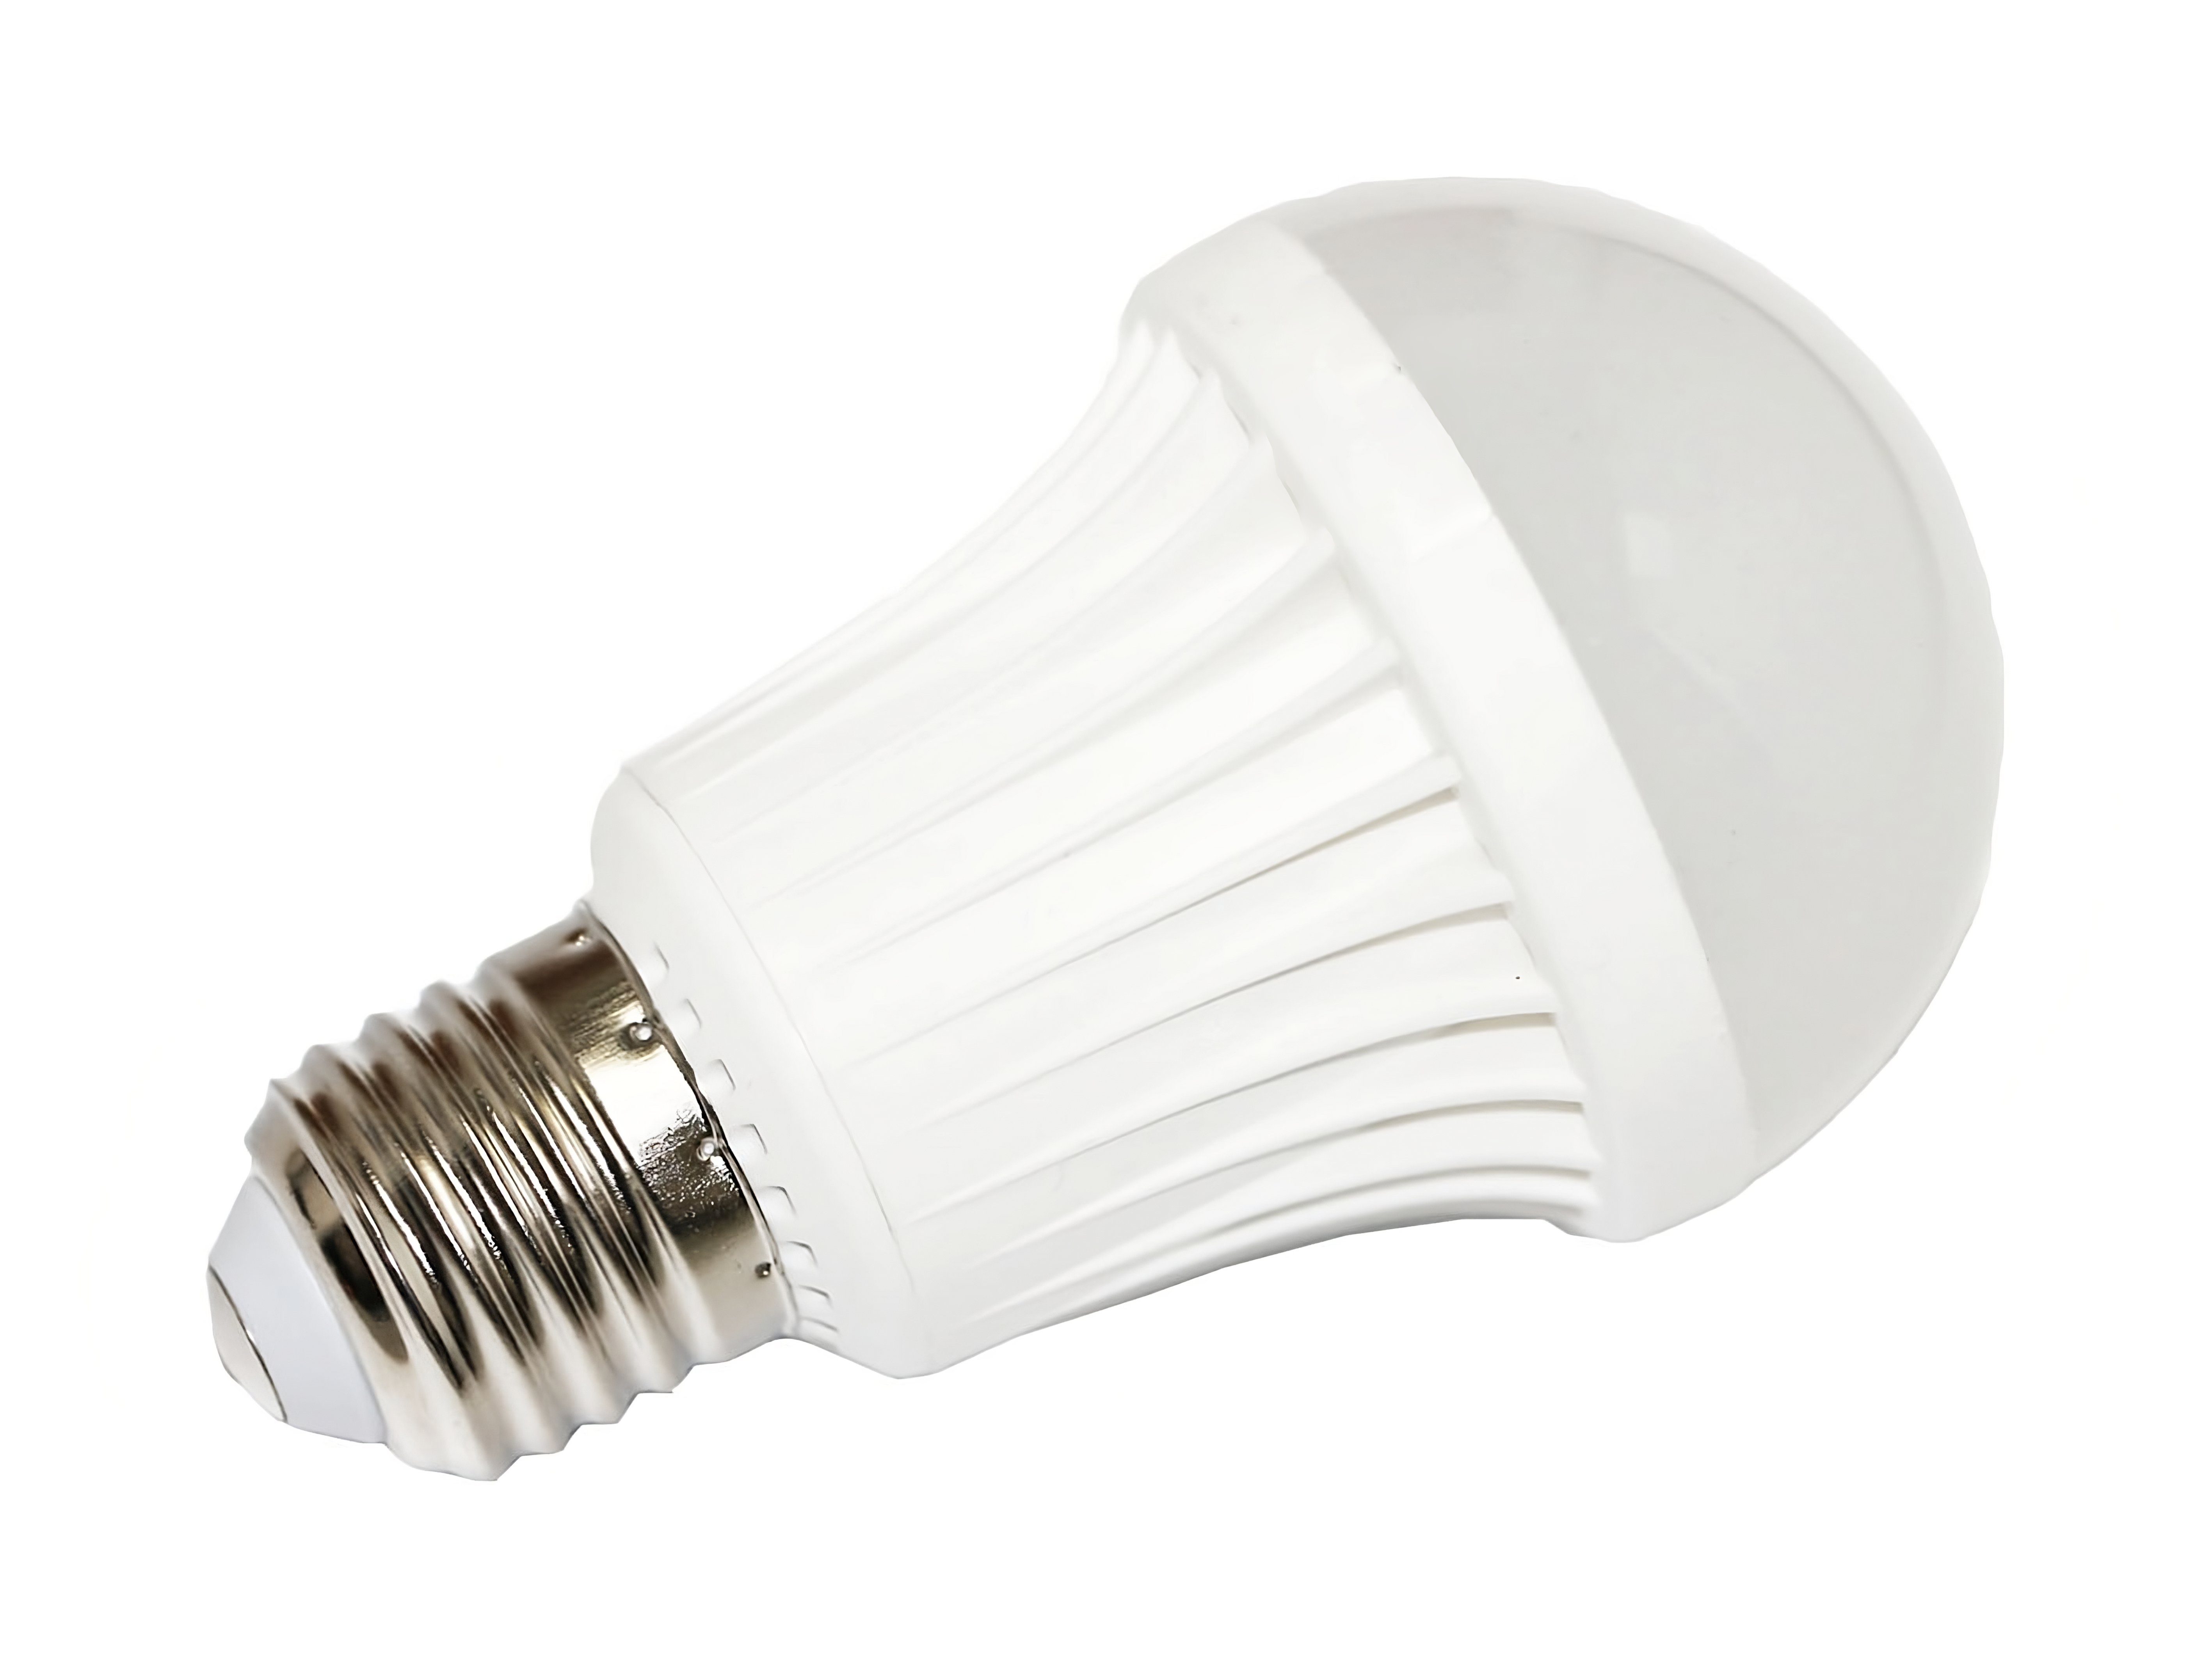 Ogeled Fassung E27 LED Lampe Warmweiß Ersetzt 60W Birnen LED-Leuchtmittel,  E27, Warmweiss, Energiesparend